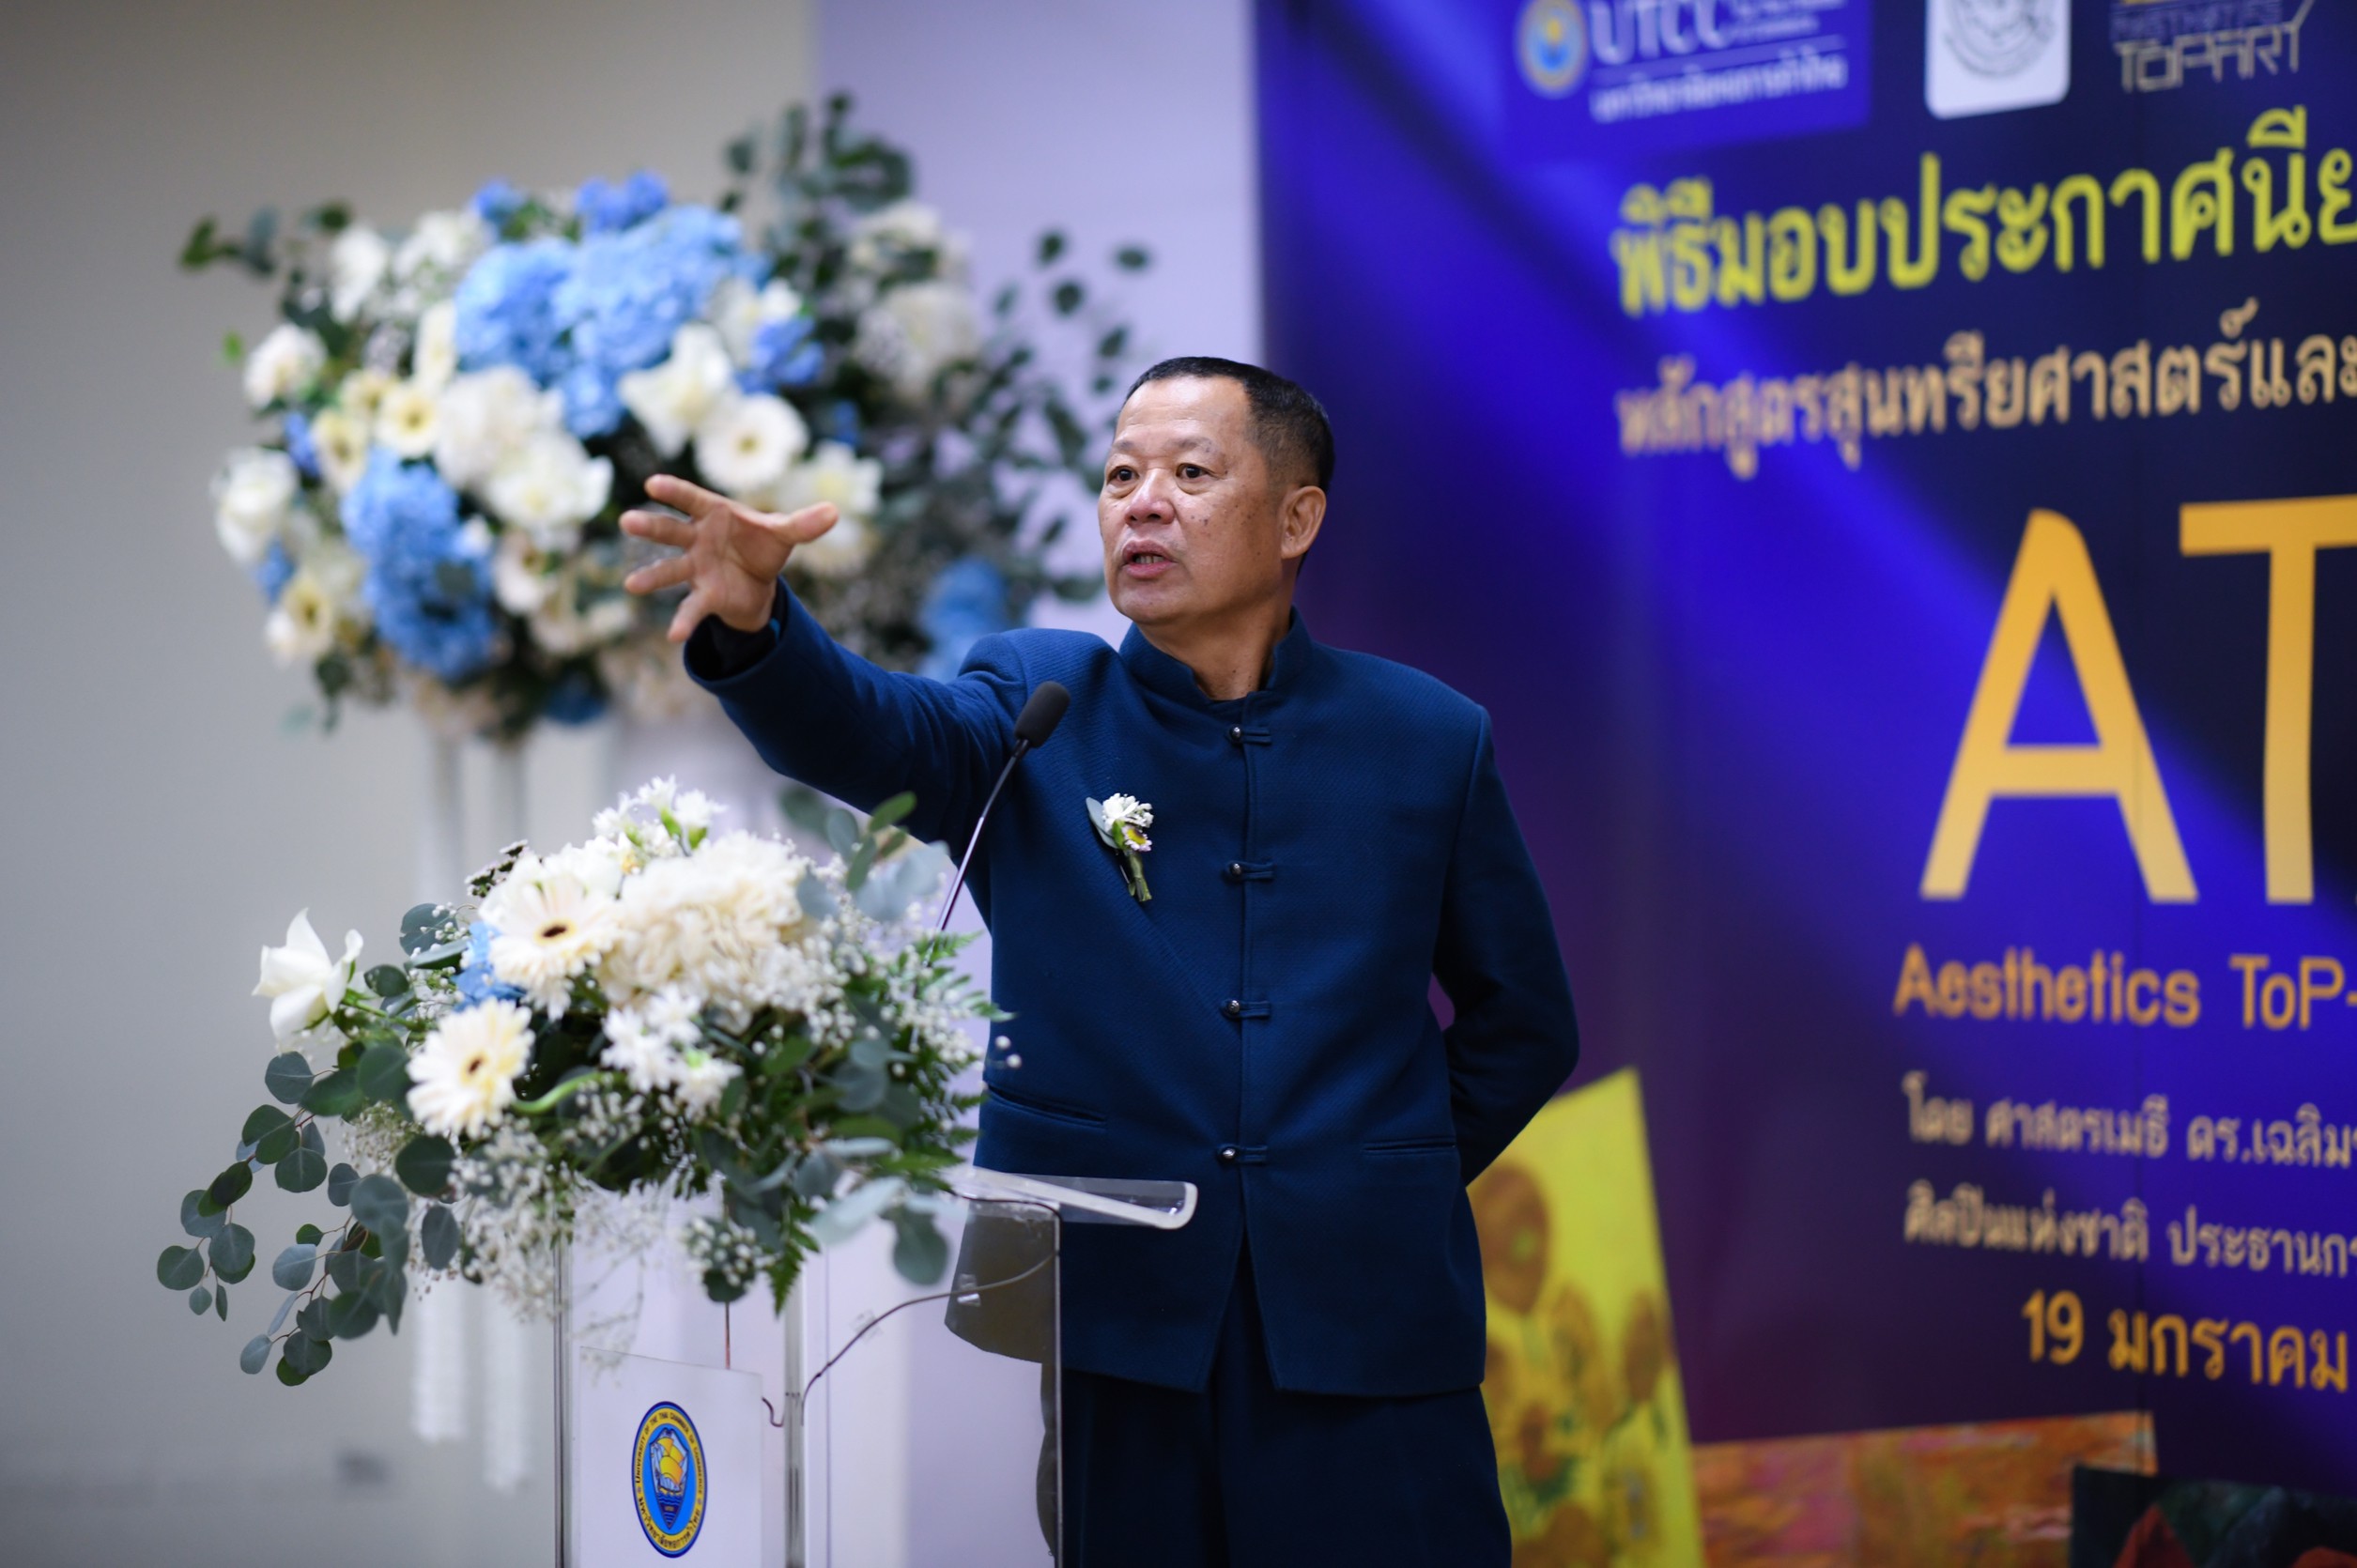 อาจารย์ ศาสตรเมธี ดร. เฉลิมชัย โฆษิพิพัฒน์ มอบใบประกาศ แด่ผู้อบรมหลักสูตร สุนทรียศาสตร์และศิลป์สำหรับผู้บริหารระดับสูงที่ มหาวิทยาลัยหอการค้าไทย